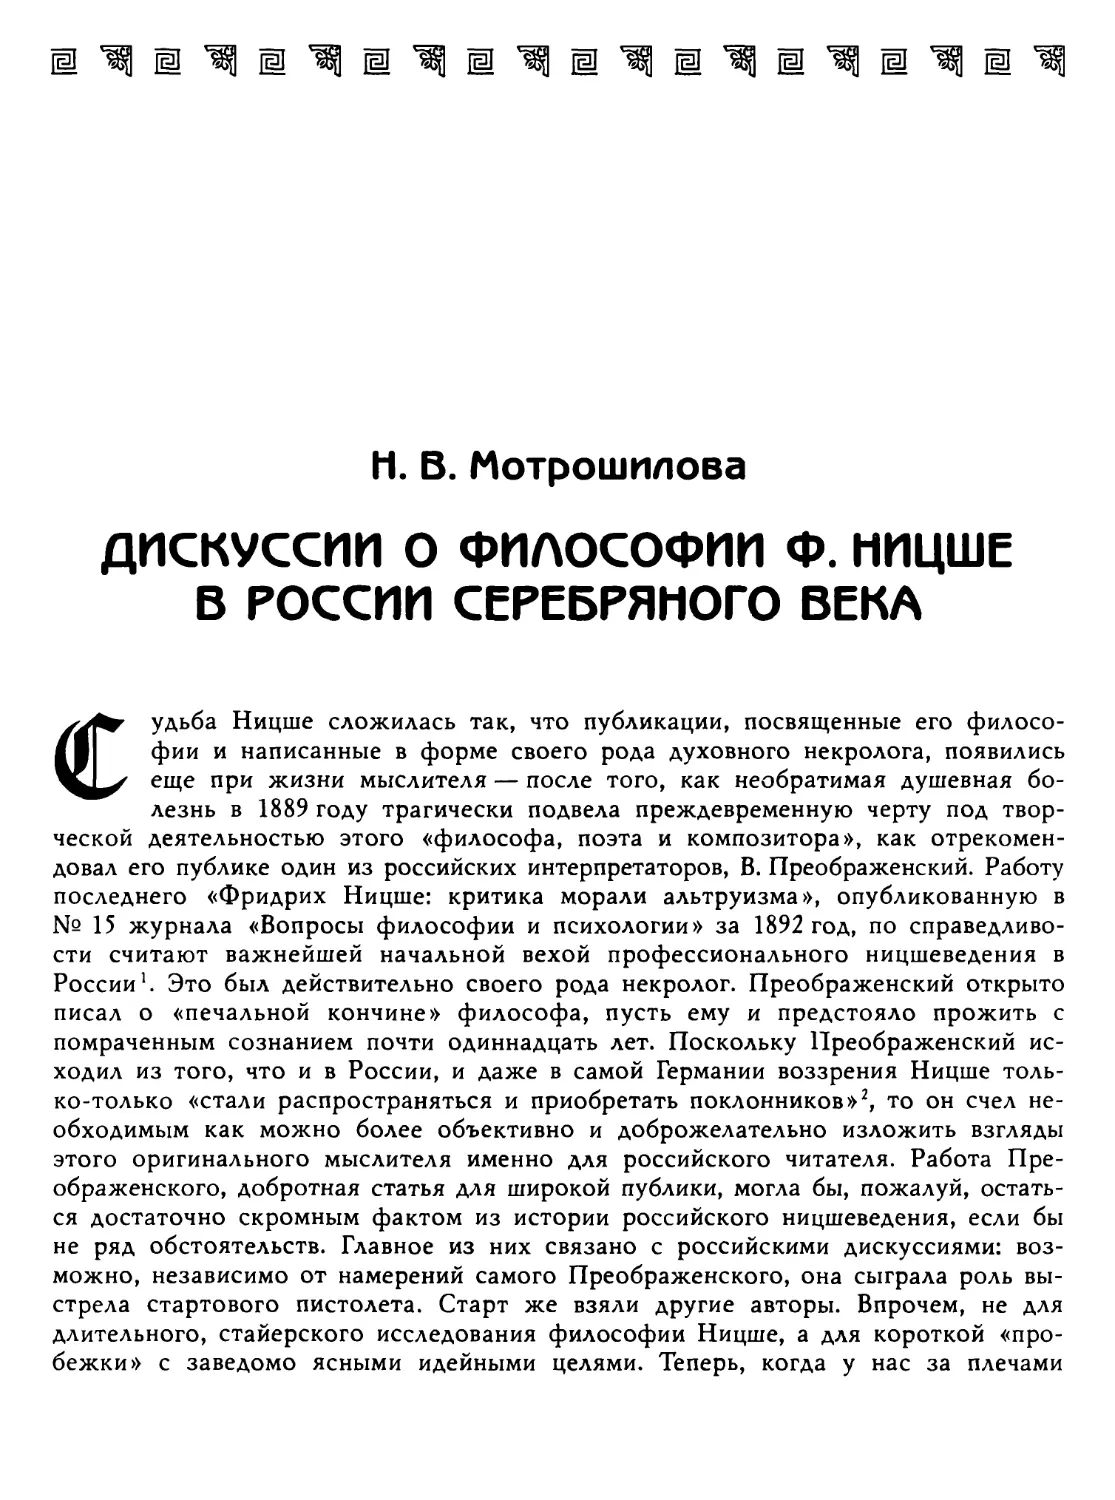 Мотрошилова Н. В. Дискуссии о философии Ф. Ницше в России серебряного века